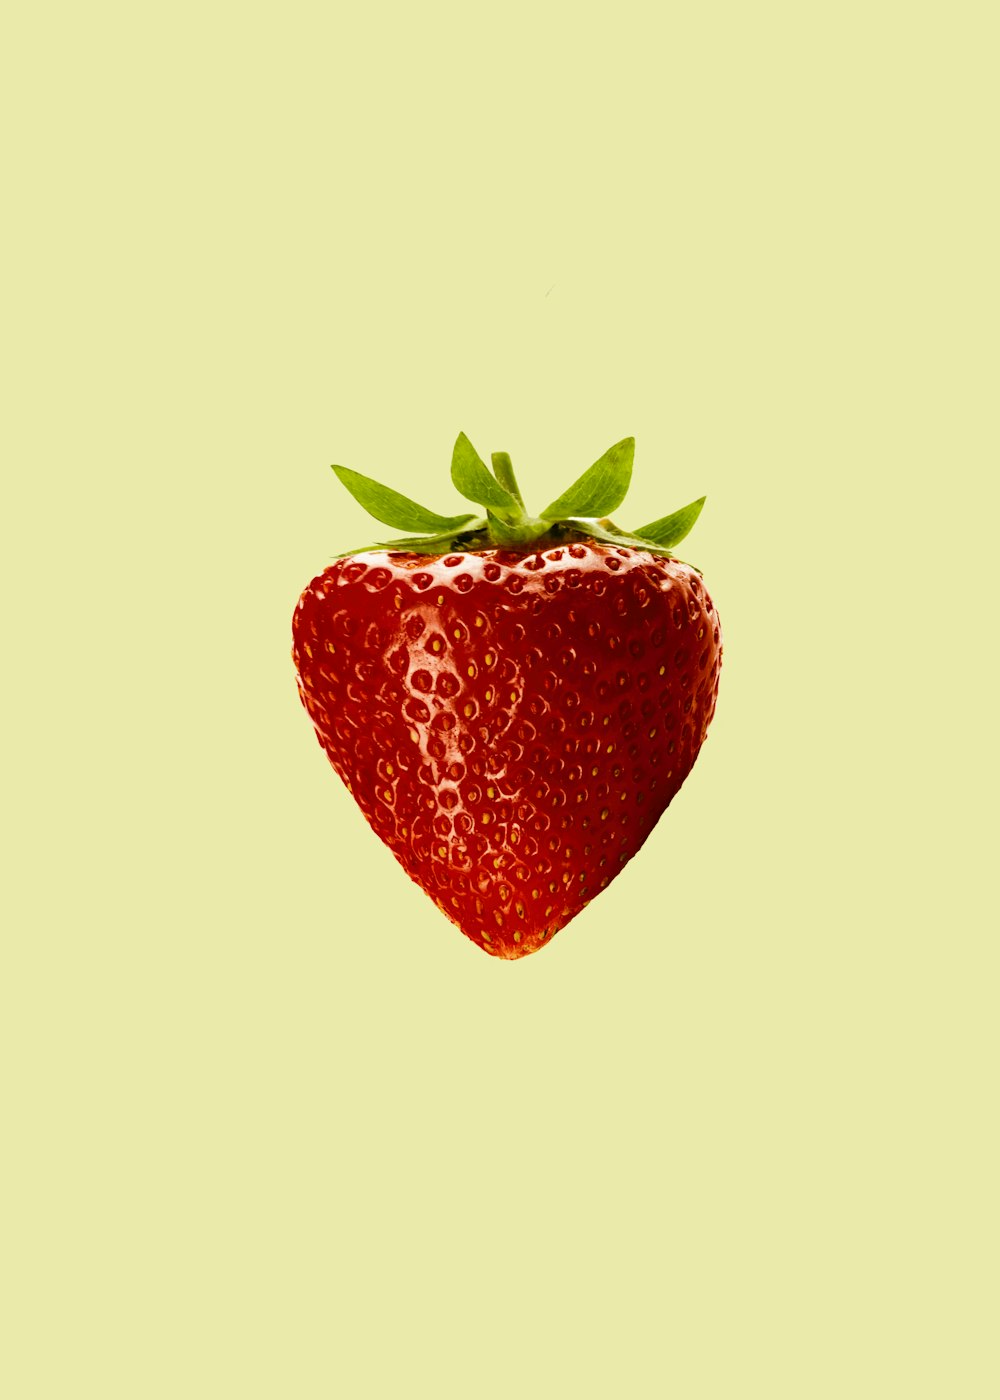 흰색 배경의 빨간 딸기 과일